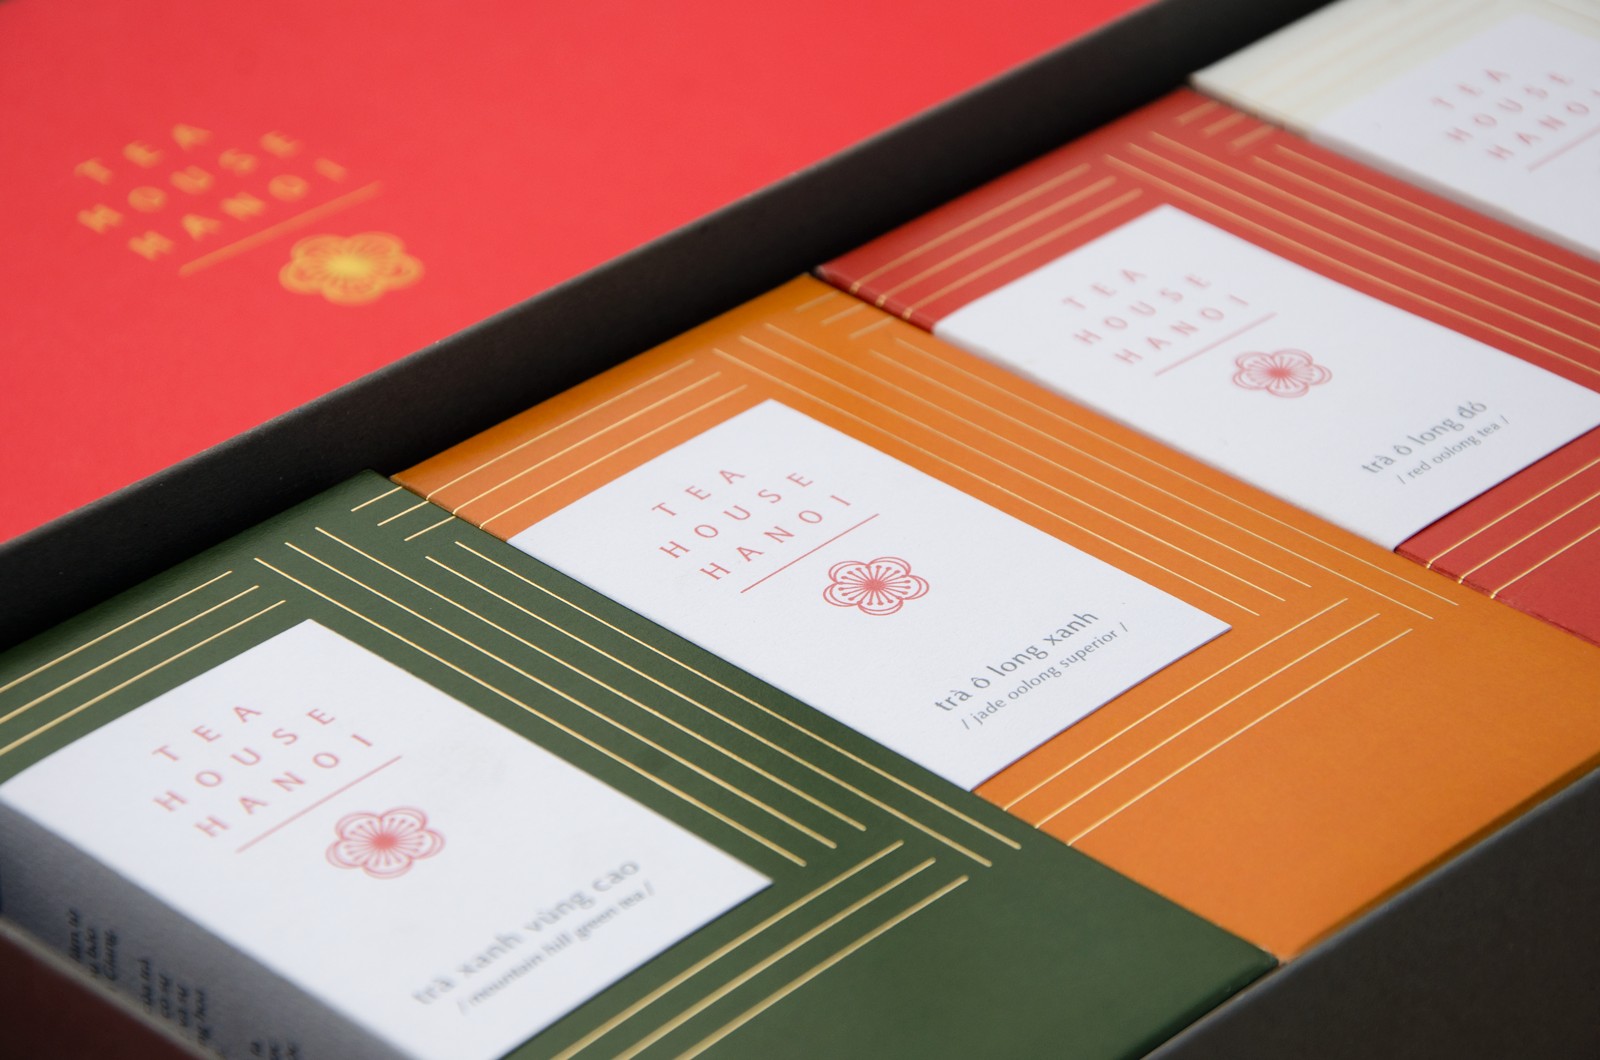 越南TEA HOUSE HANOI茶品牌和包装设计